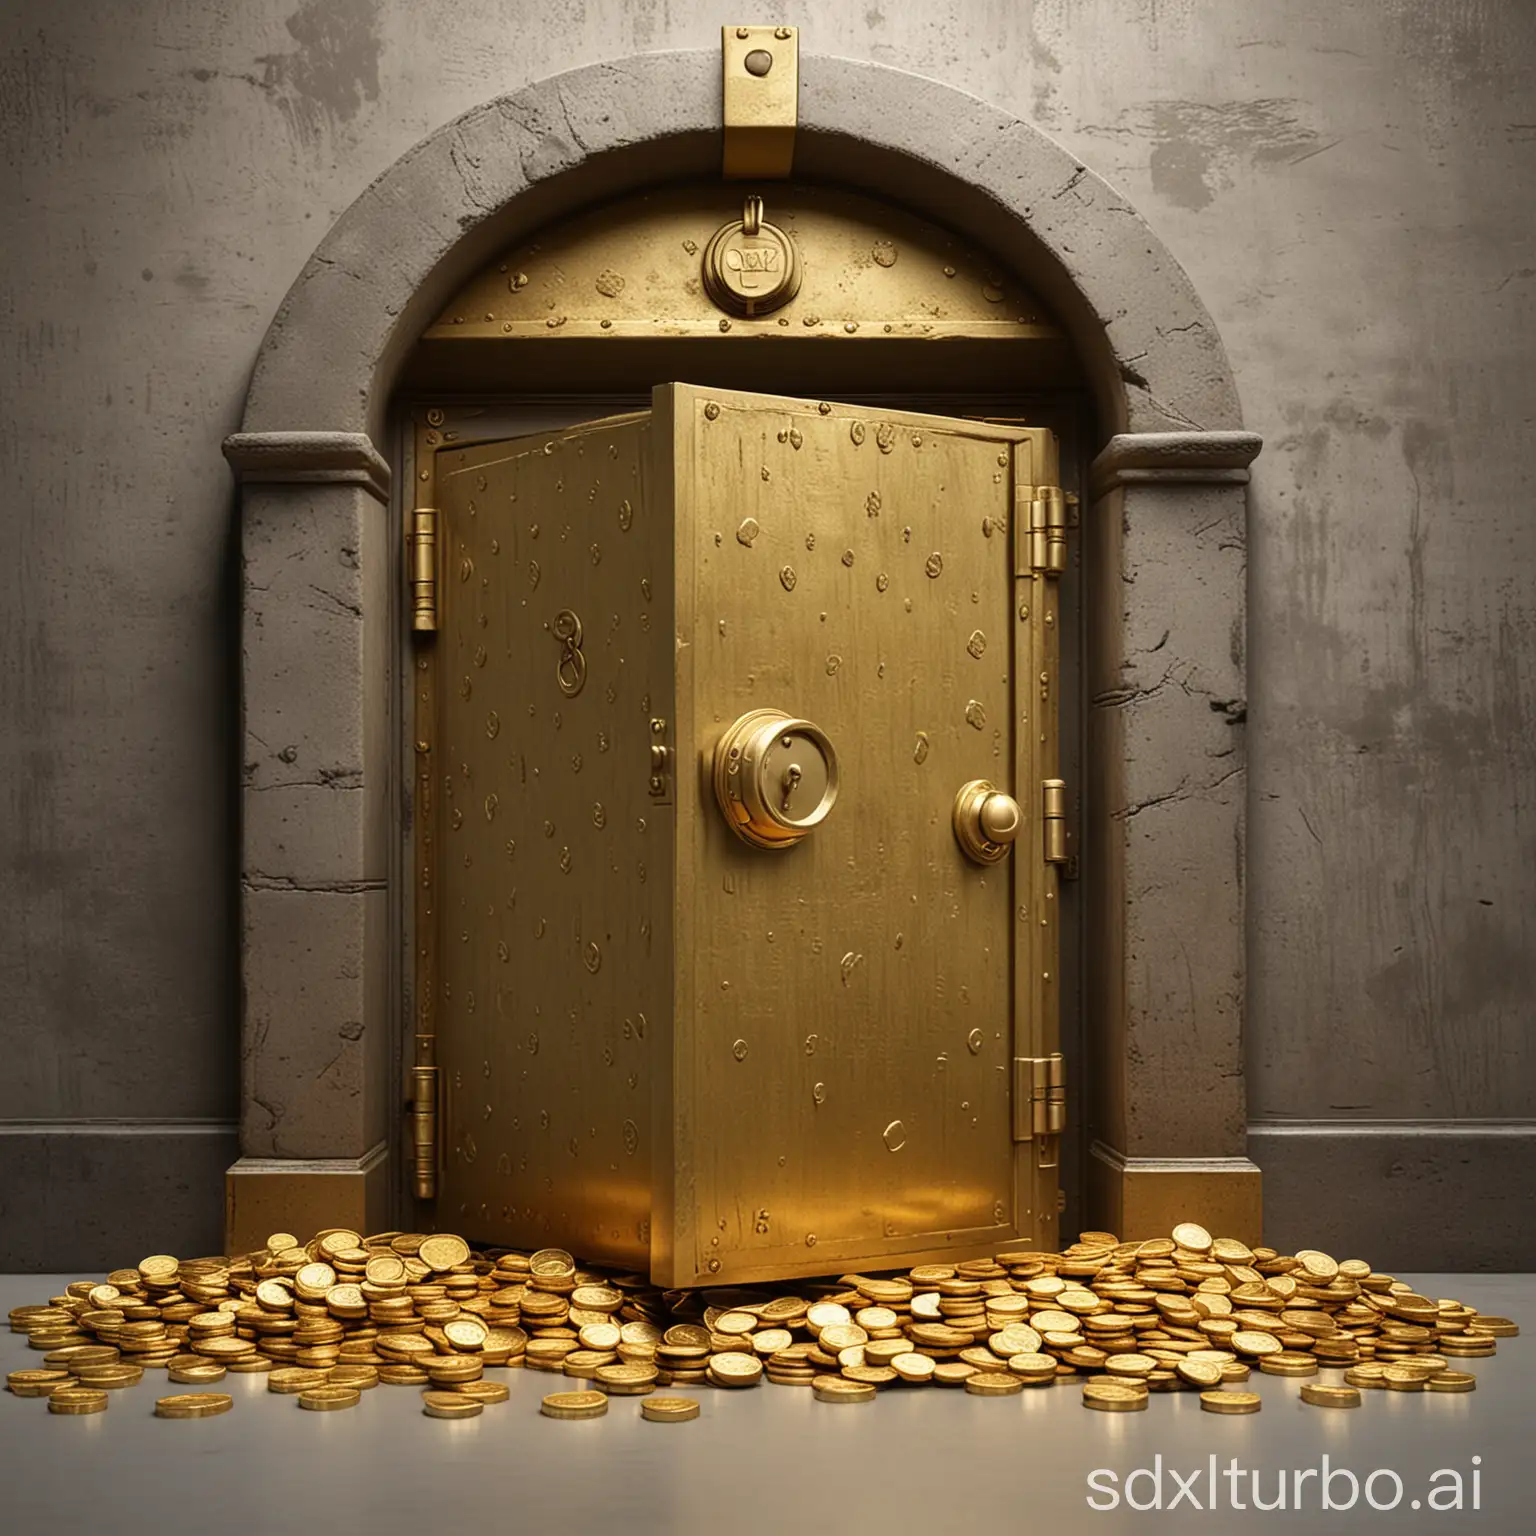 Tresor mit geschlossener Tür mit vielen Goldmünzen davor, gezeichnet.